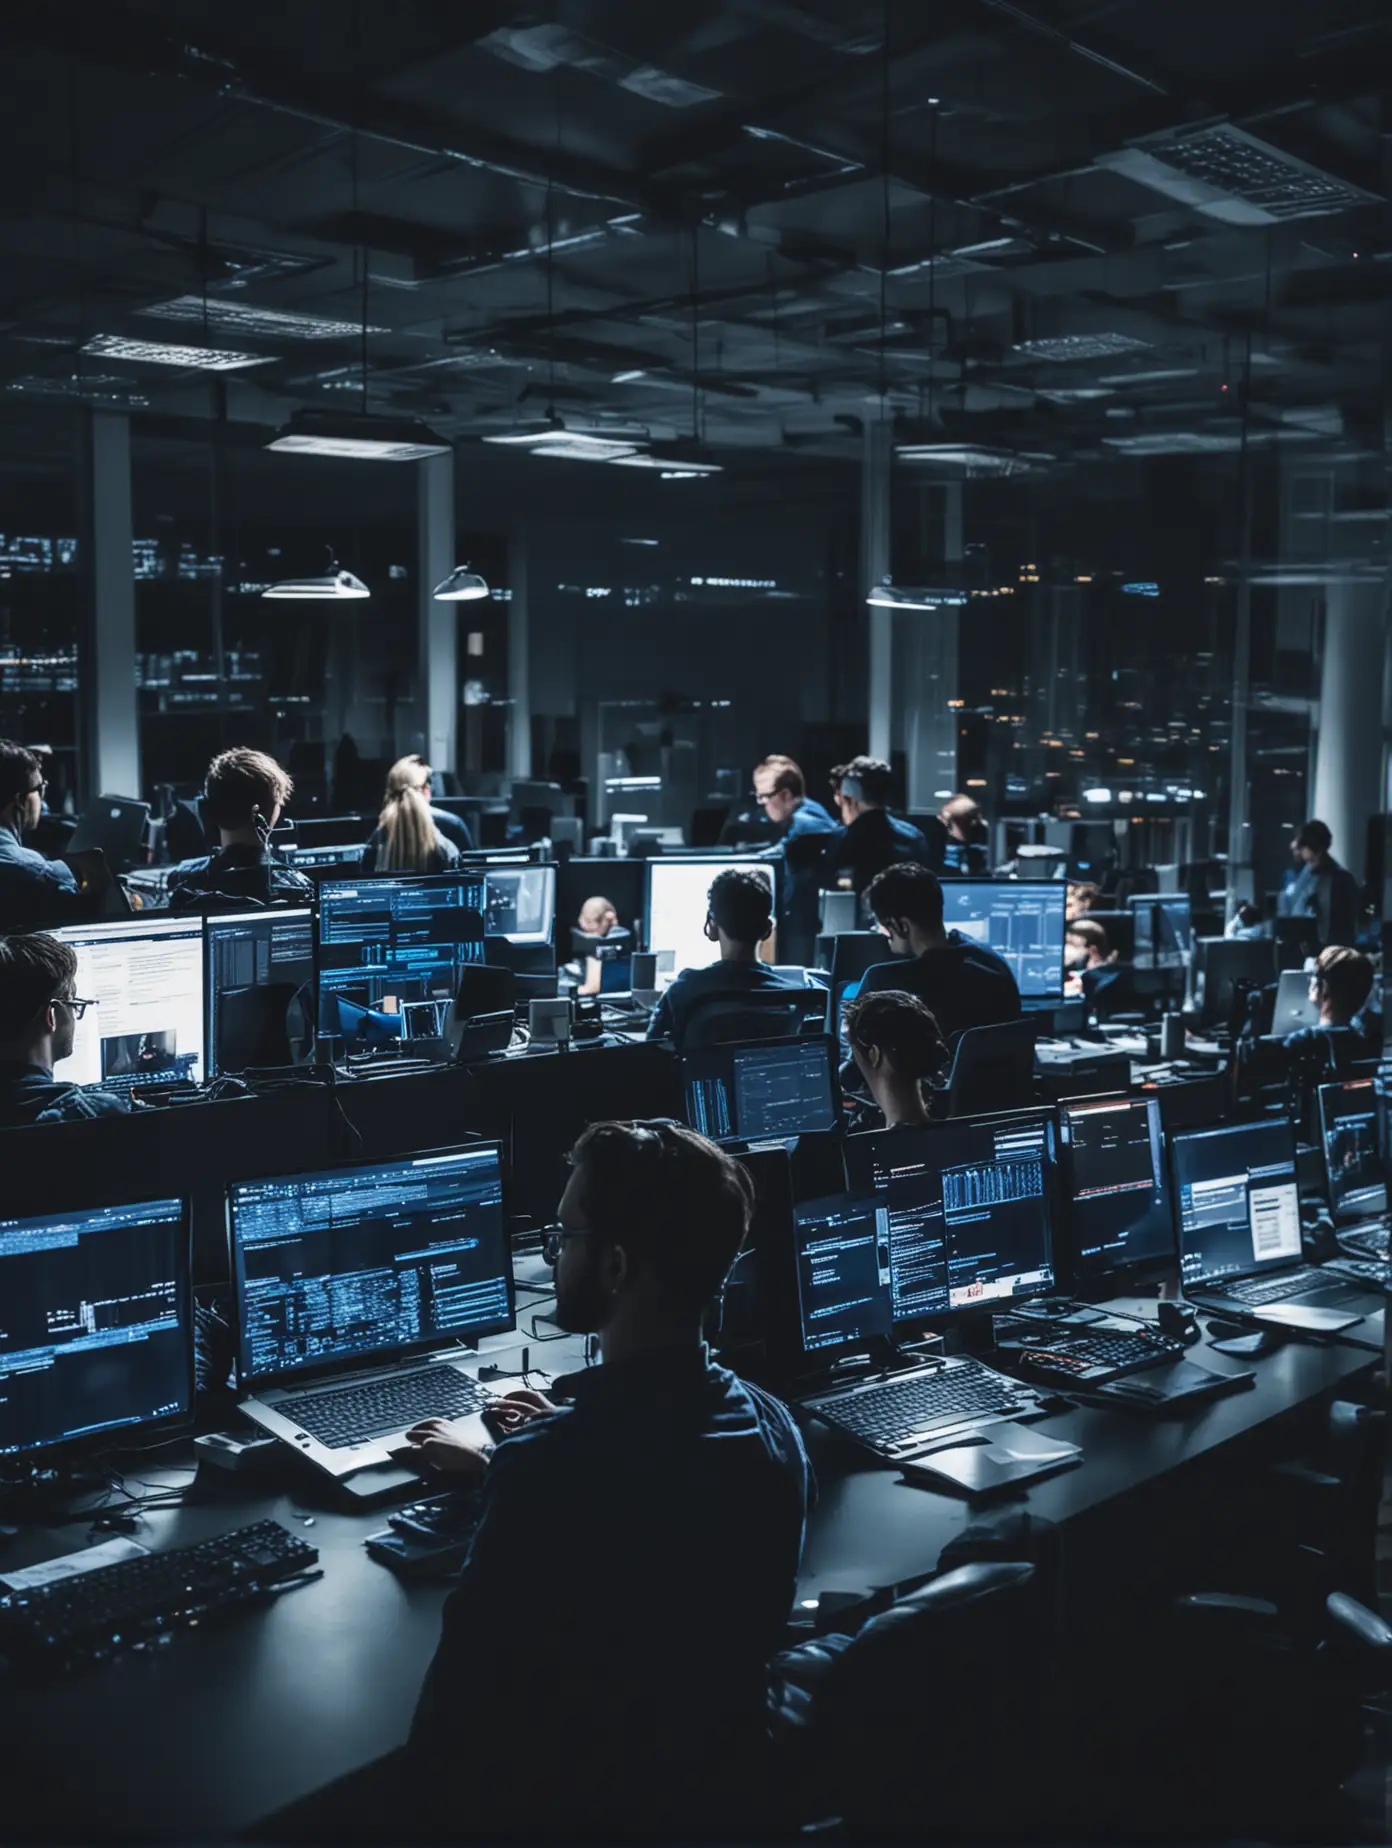 Professional Office Scene Developers Programming on Laptops in Dark Blue Setting